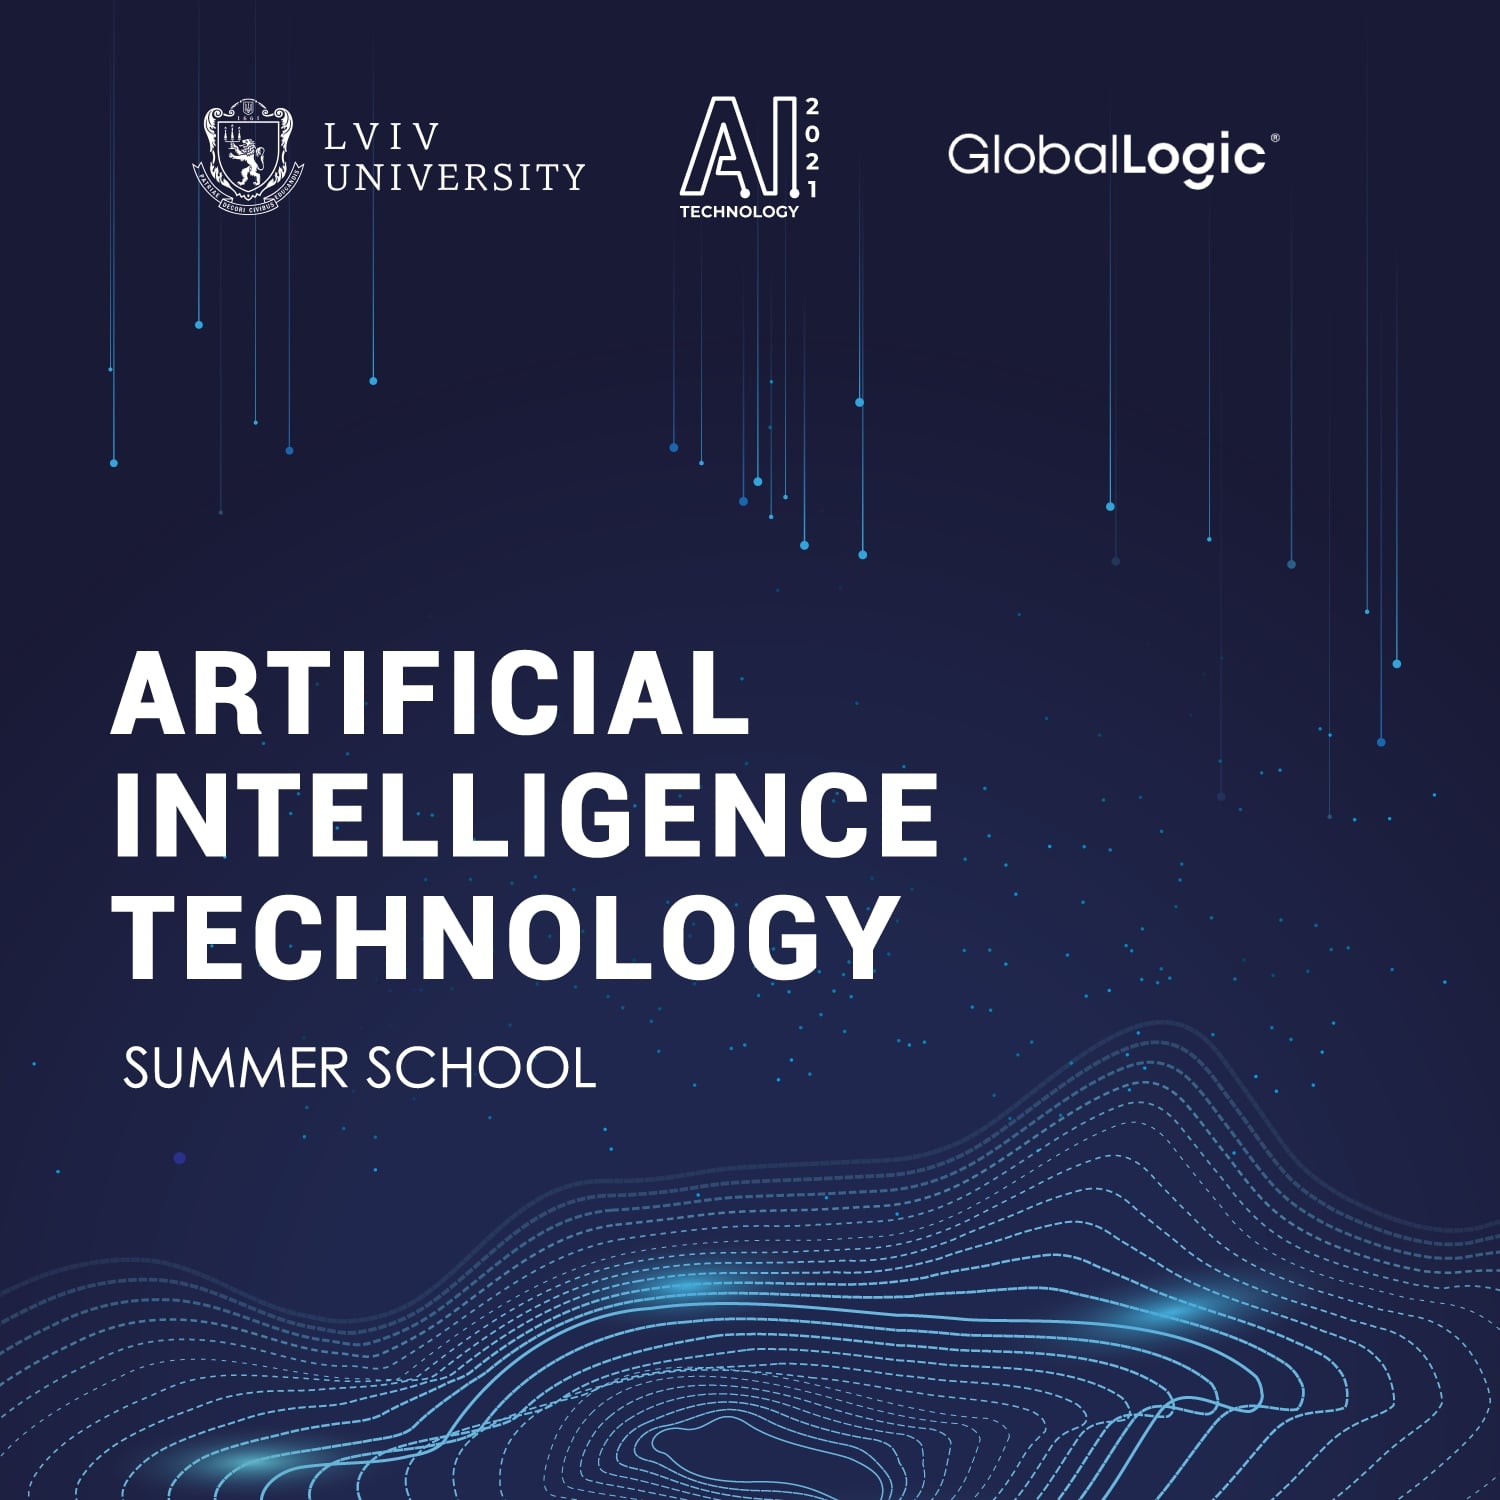 Університет започатковує новий освітній проєкт «Аrtificial intelligence technology: summer school»